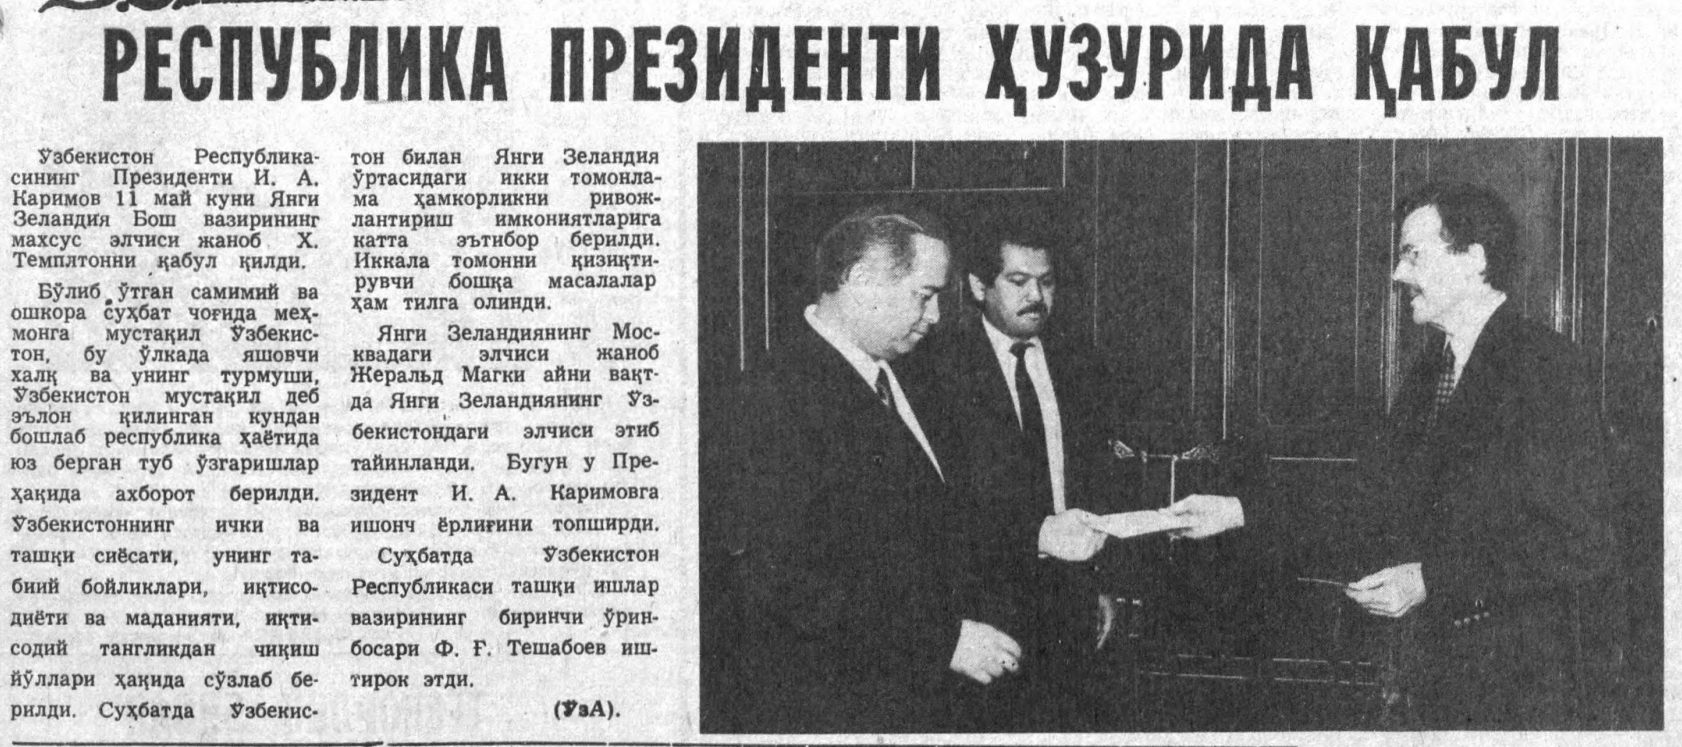 «Ўзбекистон овози» газетасининг 1992 йил 13 май сонидан лавҳа